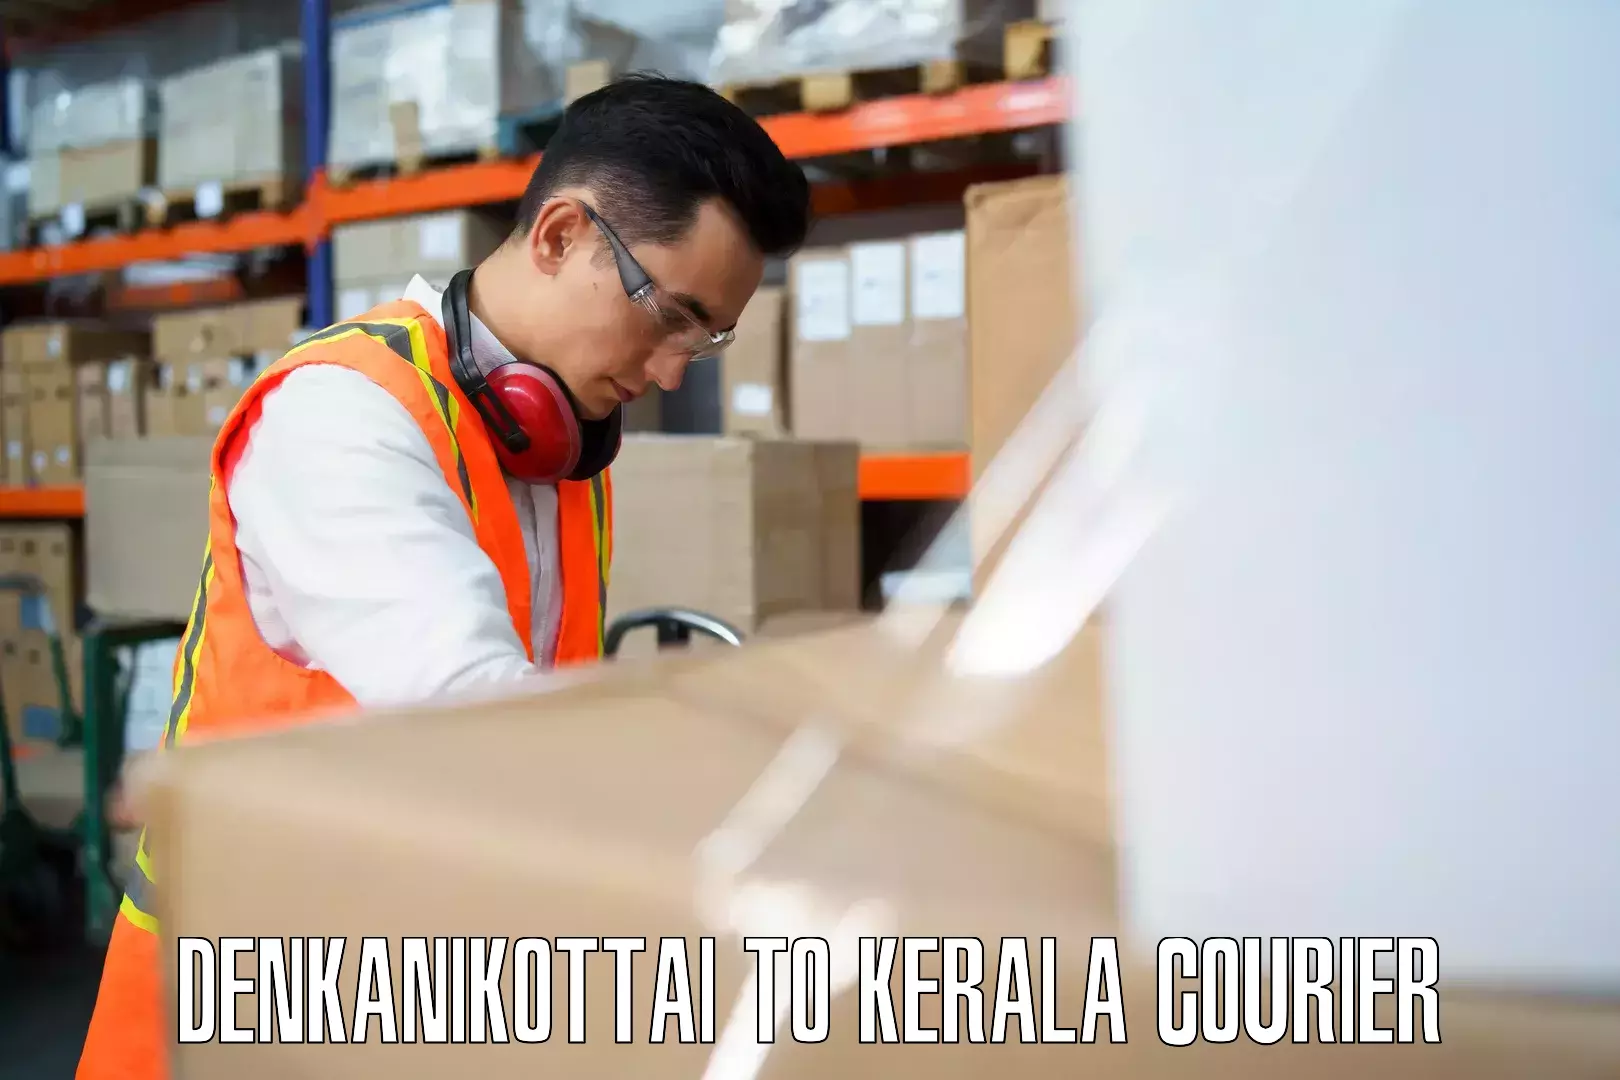 Premium luggage courier Denkanikottai to Kerala